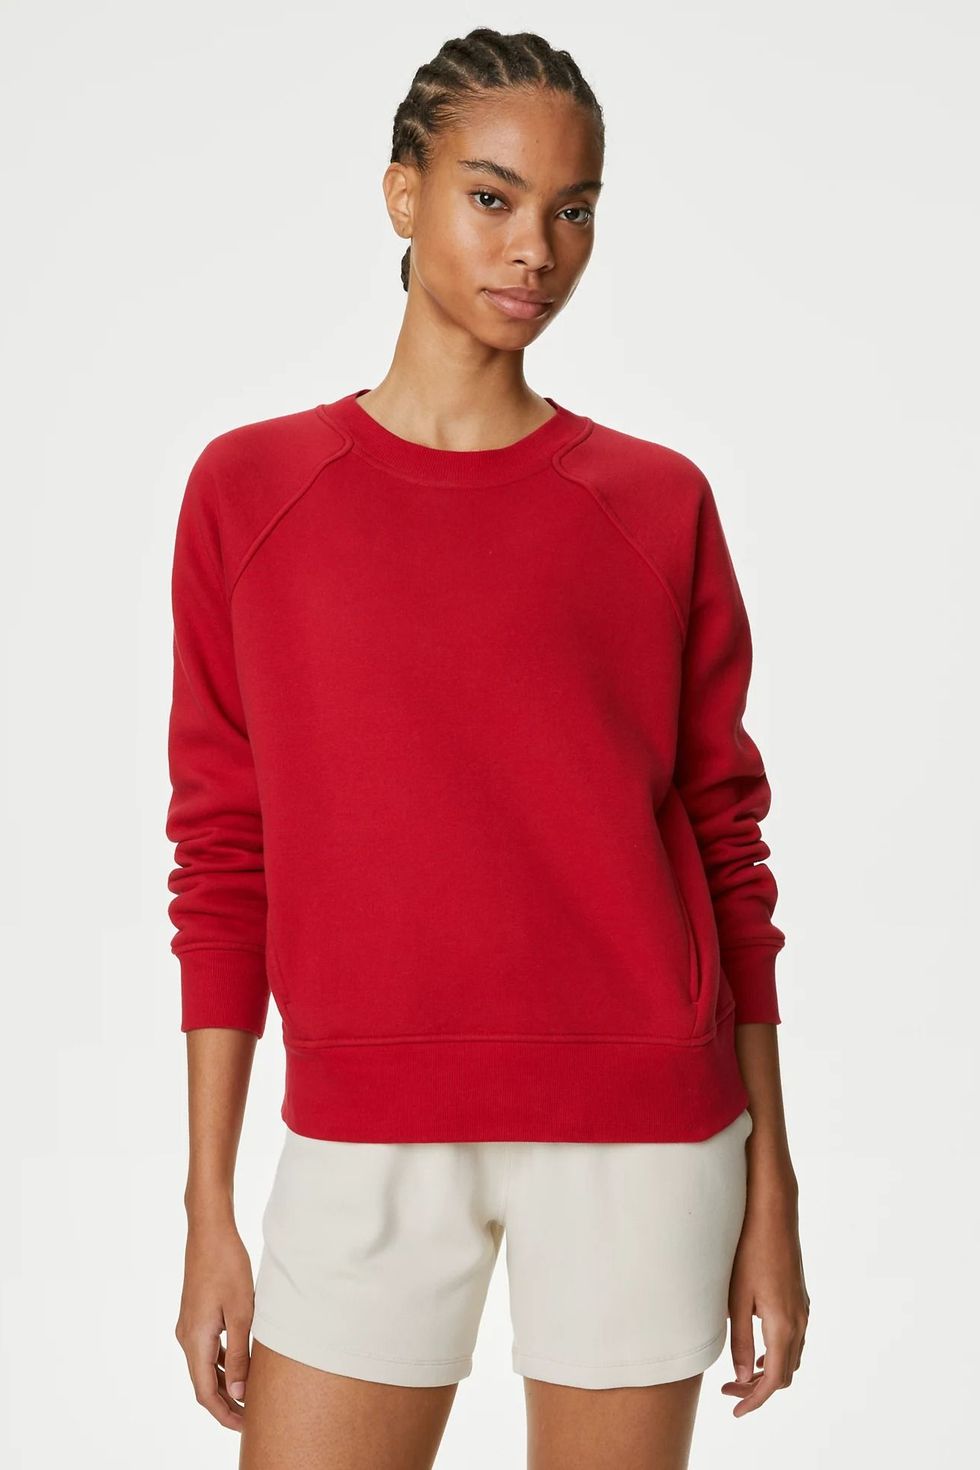 Sweatshirt with Printed Design - Dark red/Harvard - Ladies